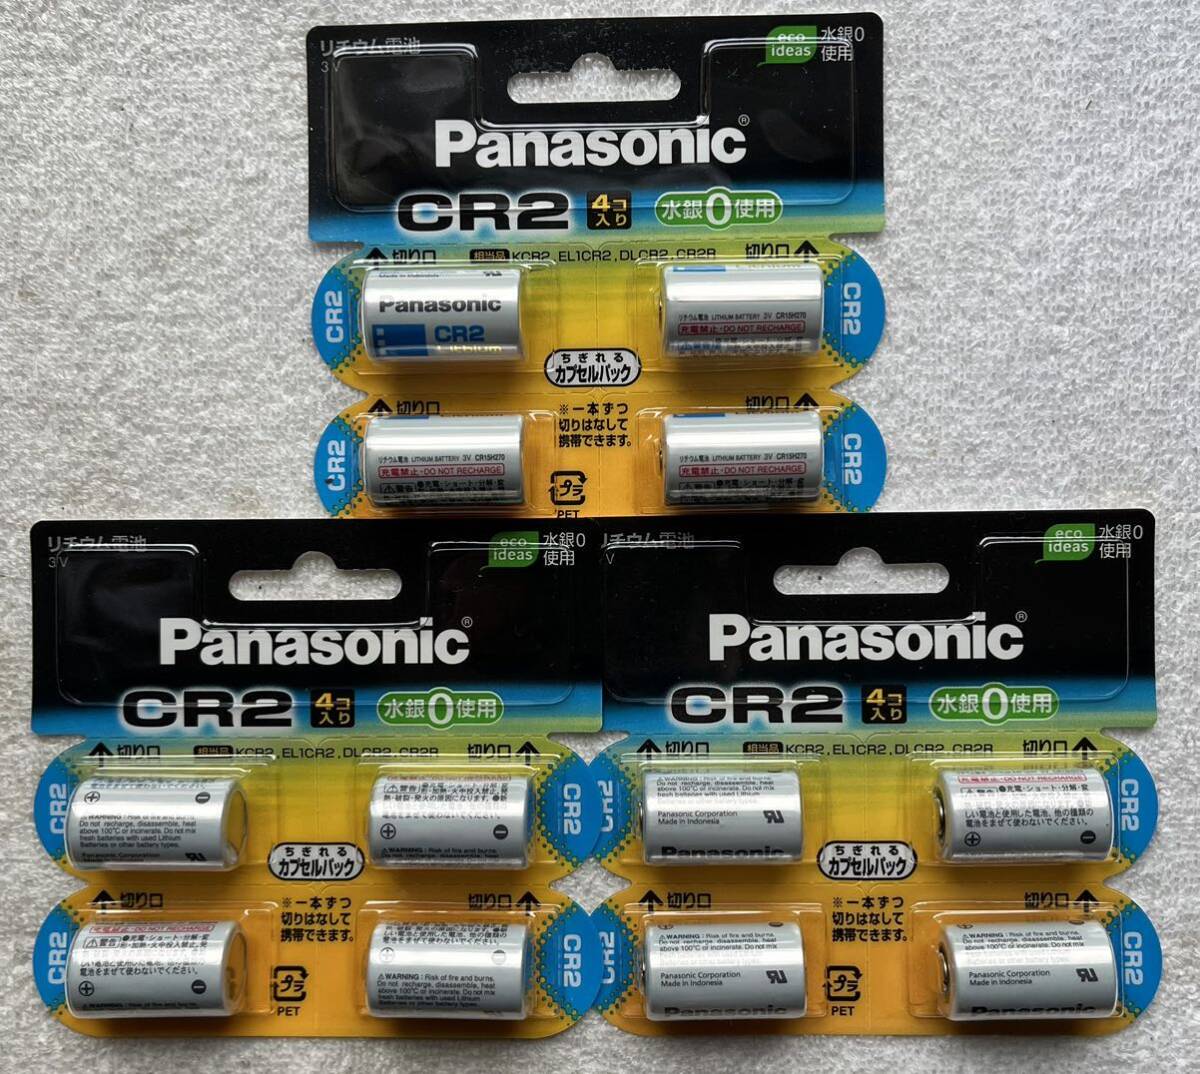 パナソニック Panasonic リチウム電池 CR-2W/4W 使用推奨期限(月-年) 08-2029 12個(4コ入り、3パック)_画像1